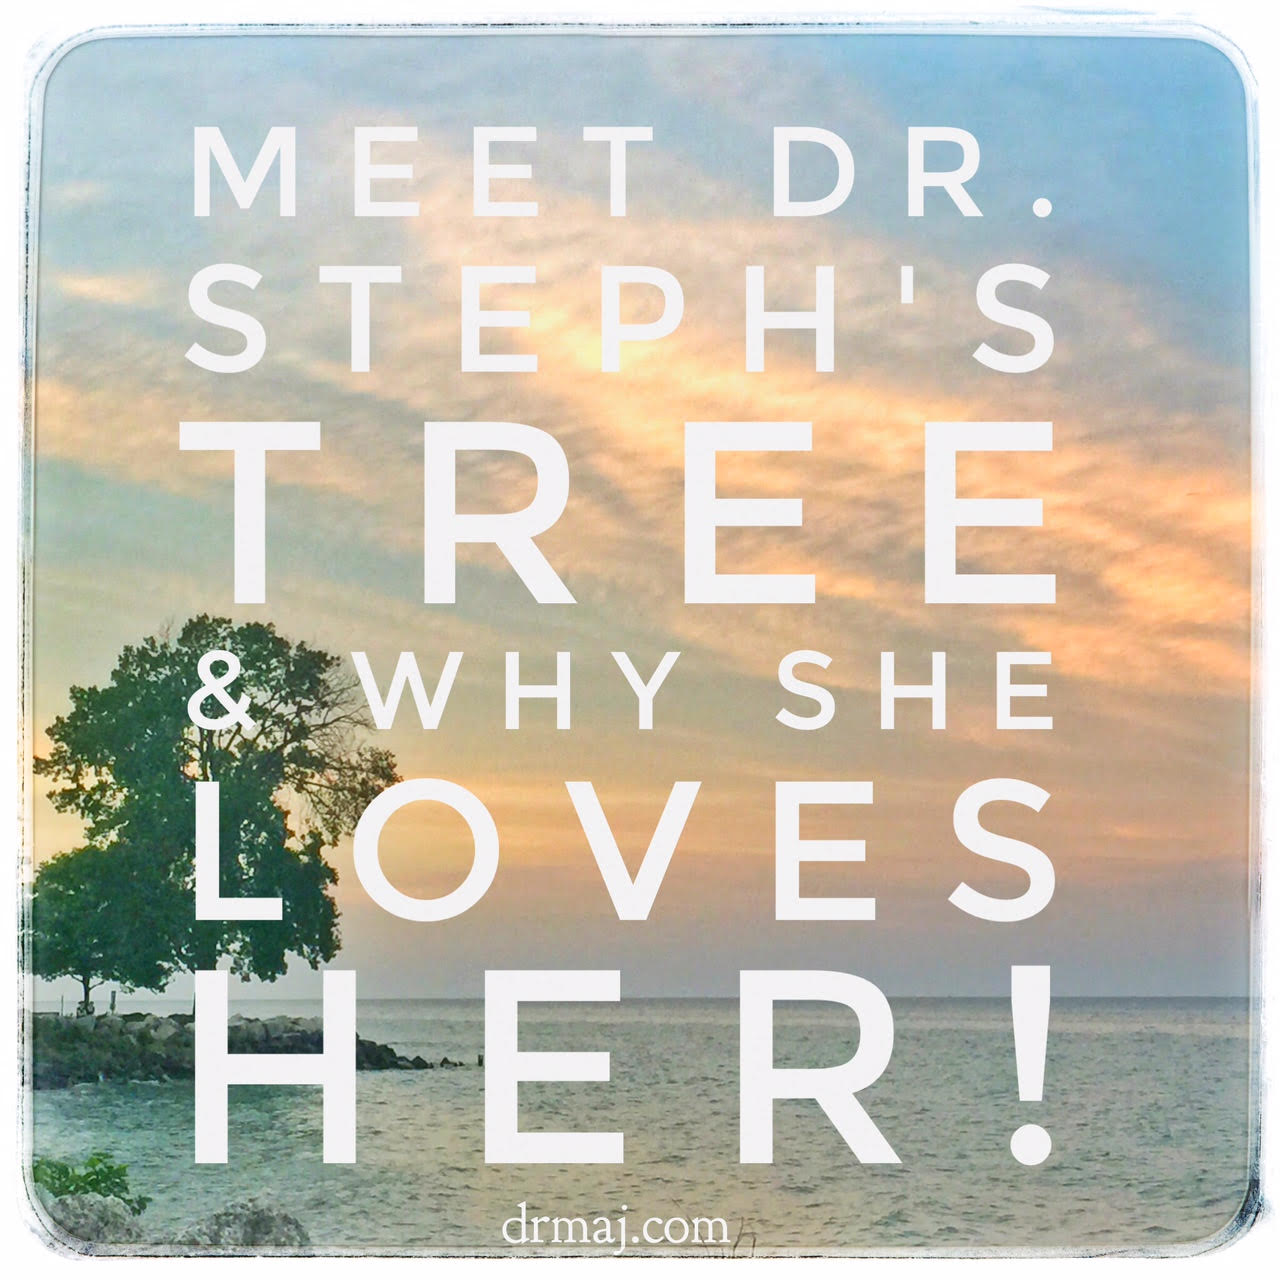 Dr-Stephs-Tree